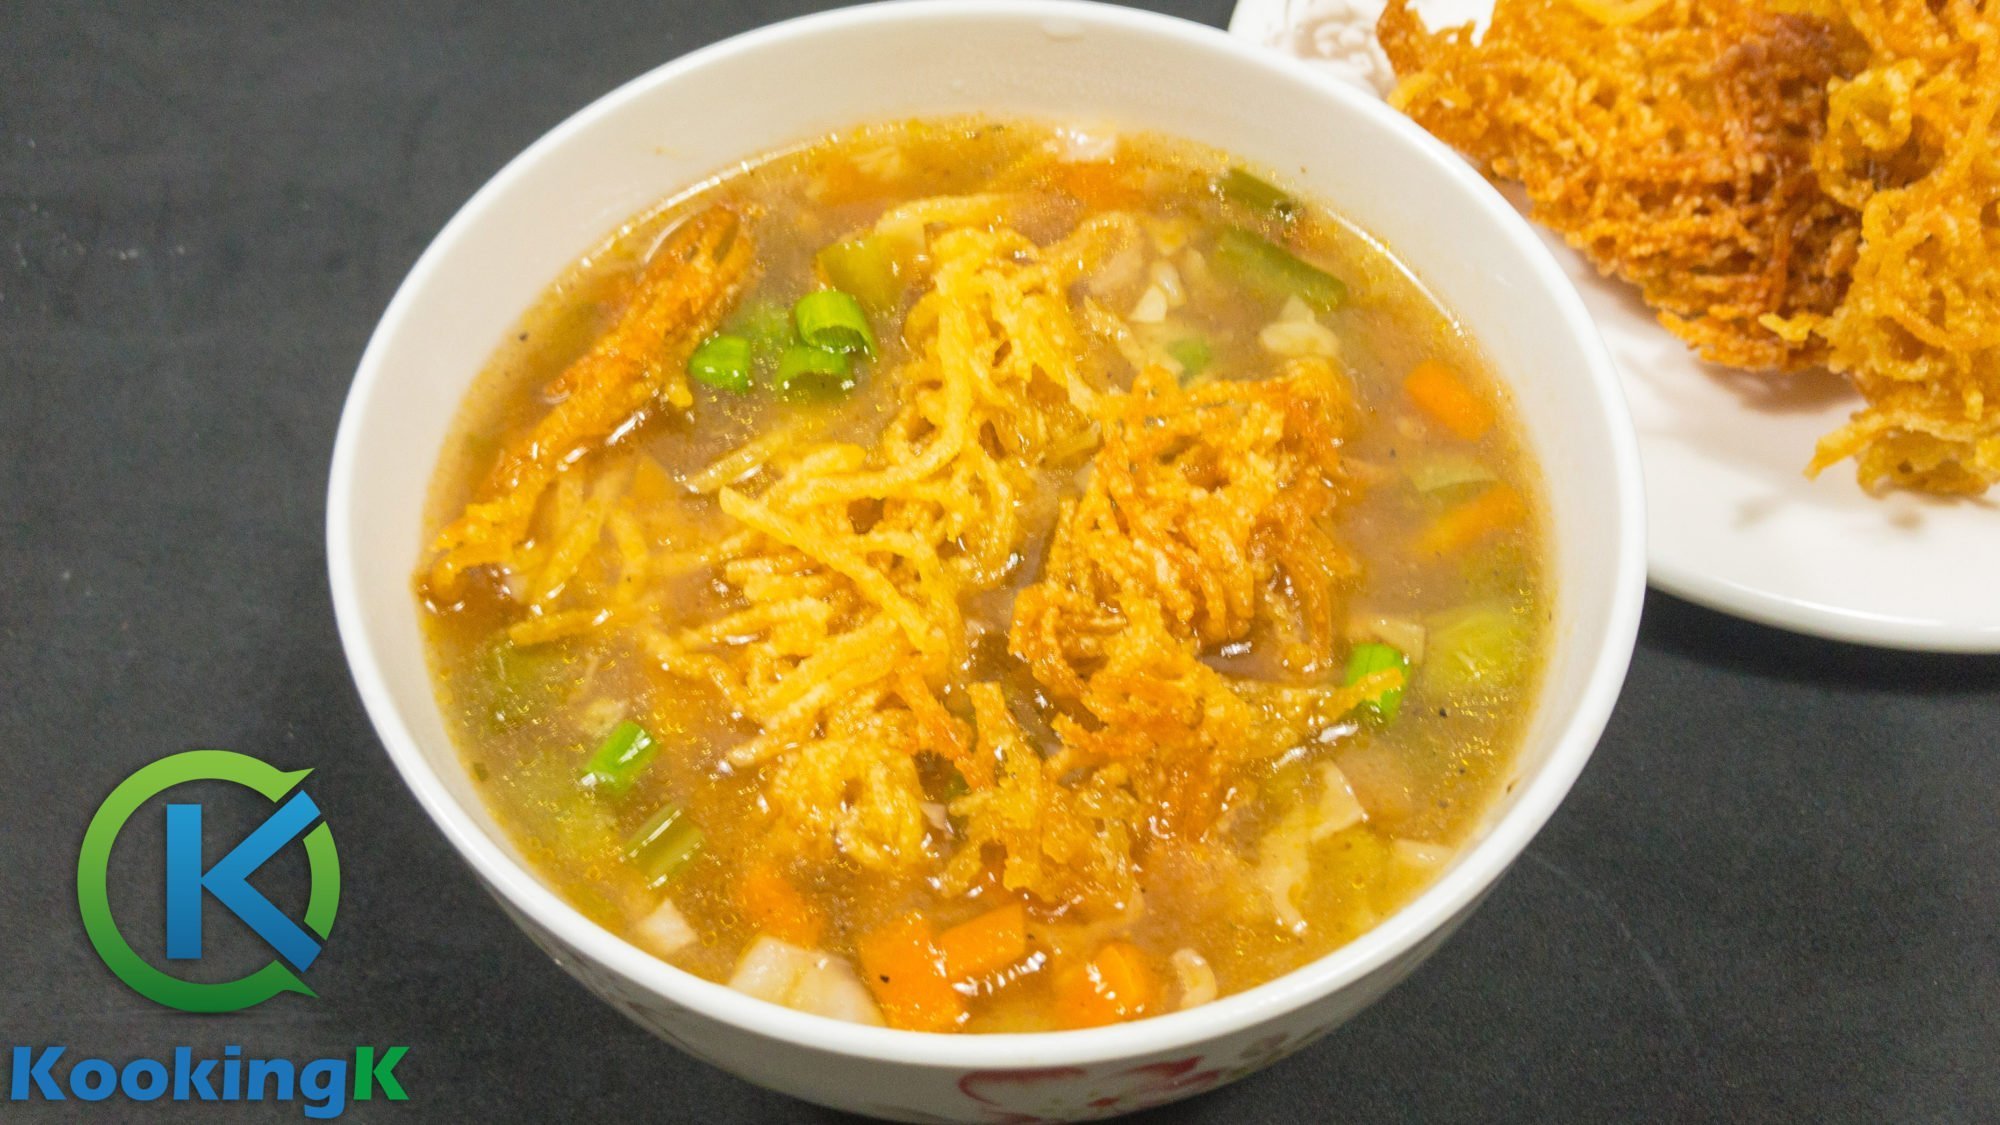 Veg Manchow Soup - Vegetable ManChow Soup Restaurant Recipe by KooKingK